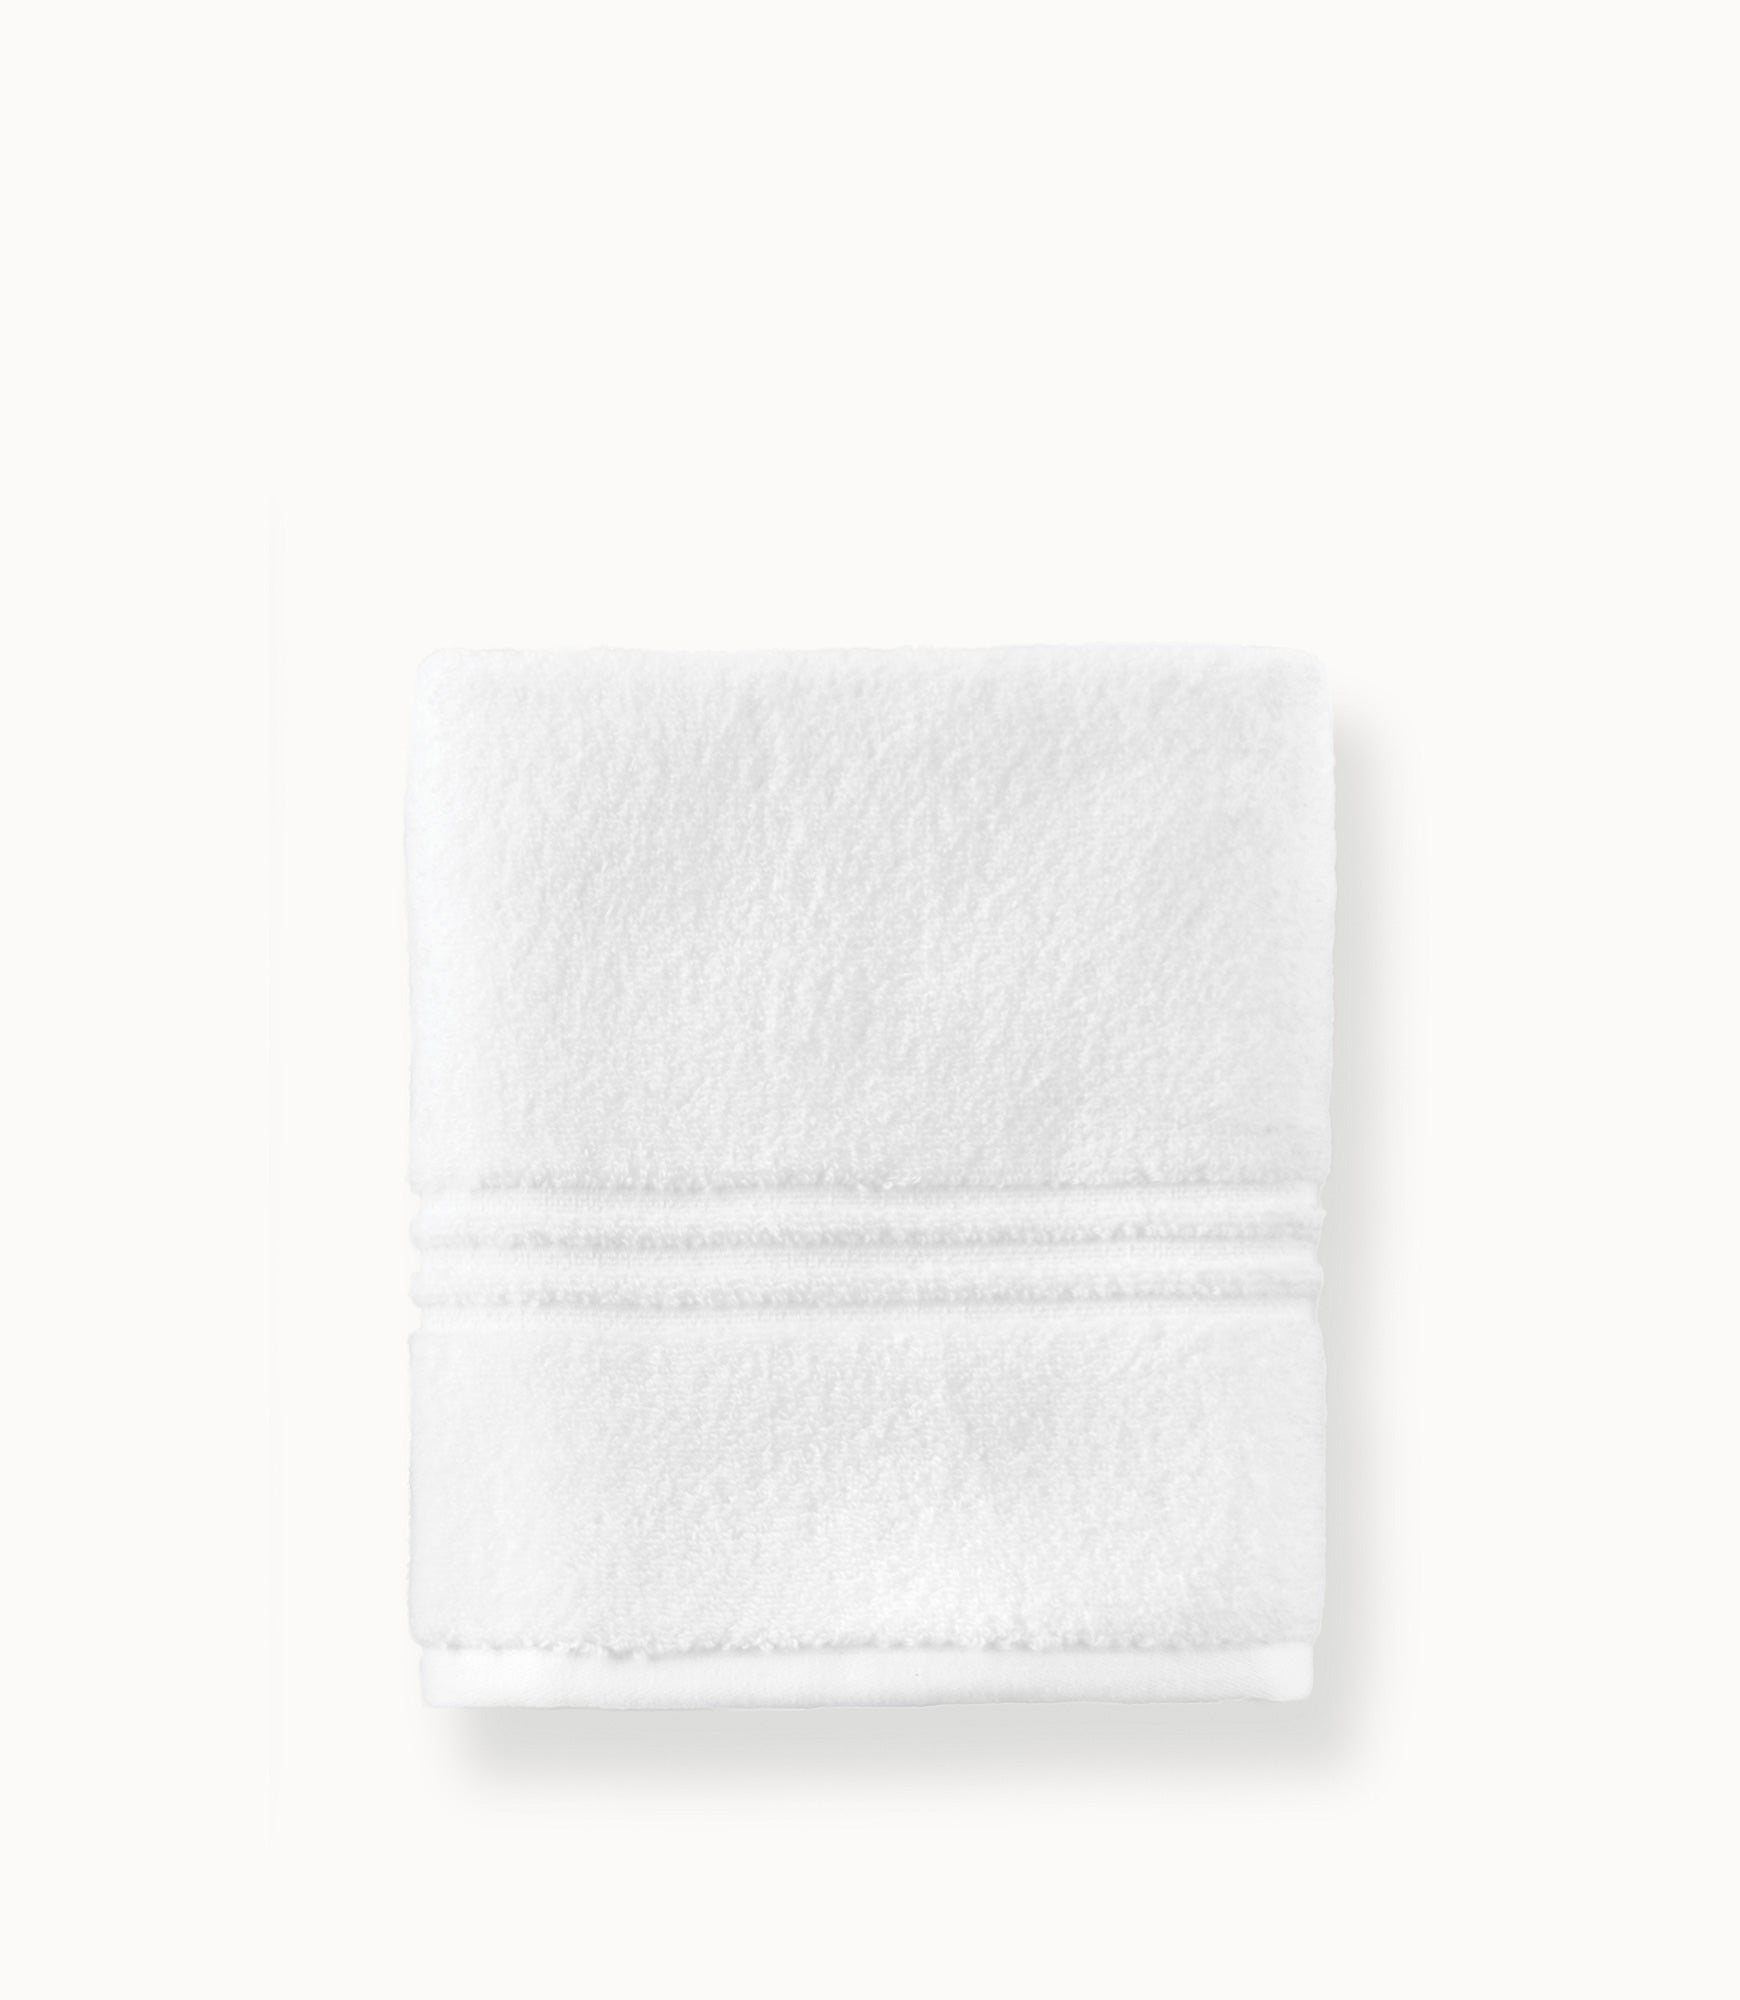 Chelsea Hand Towel, Hand